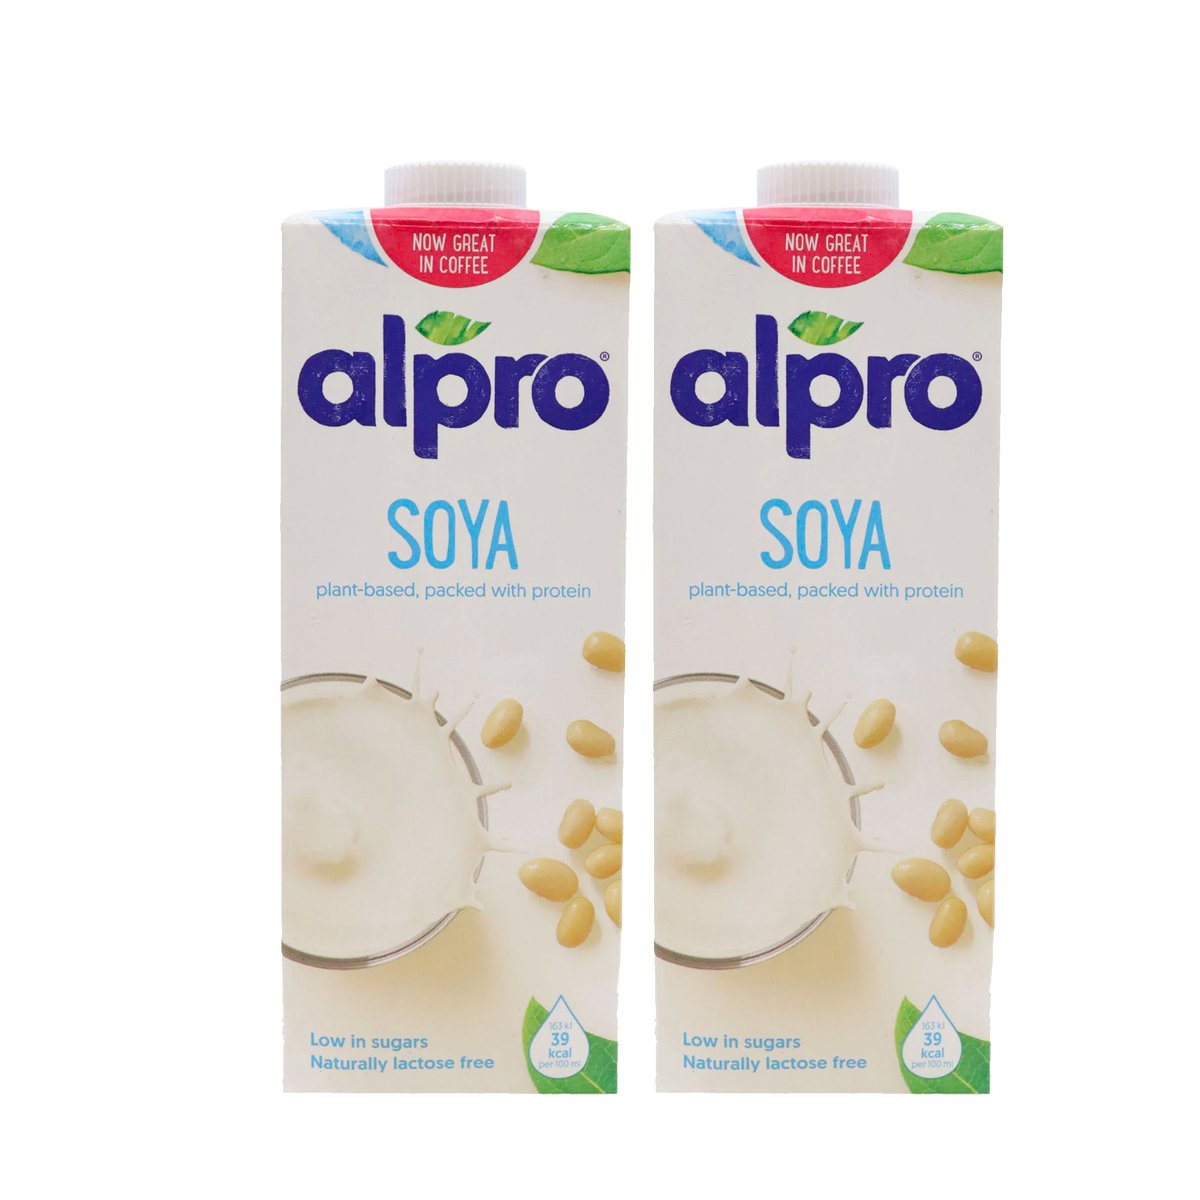 Alpro Original Soya Flavoured Milk Value Pack 2 x 1Litre